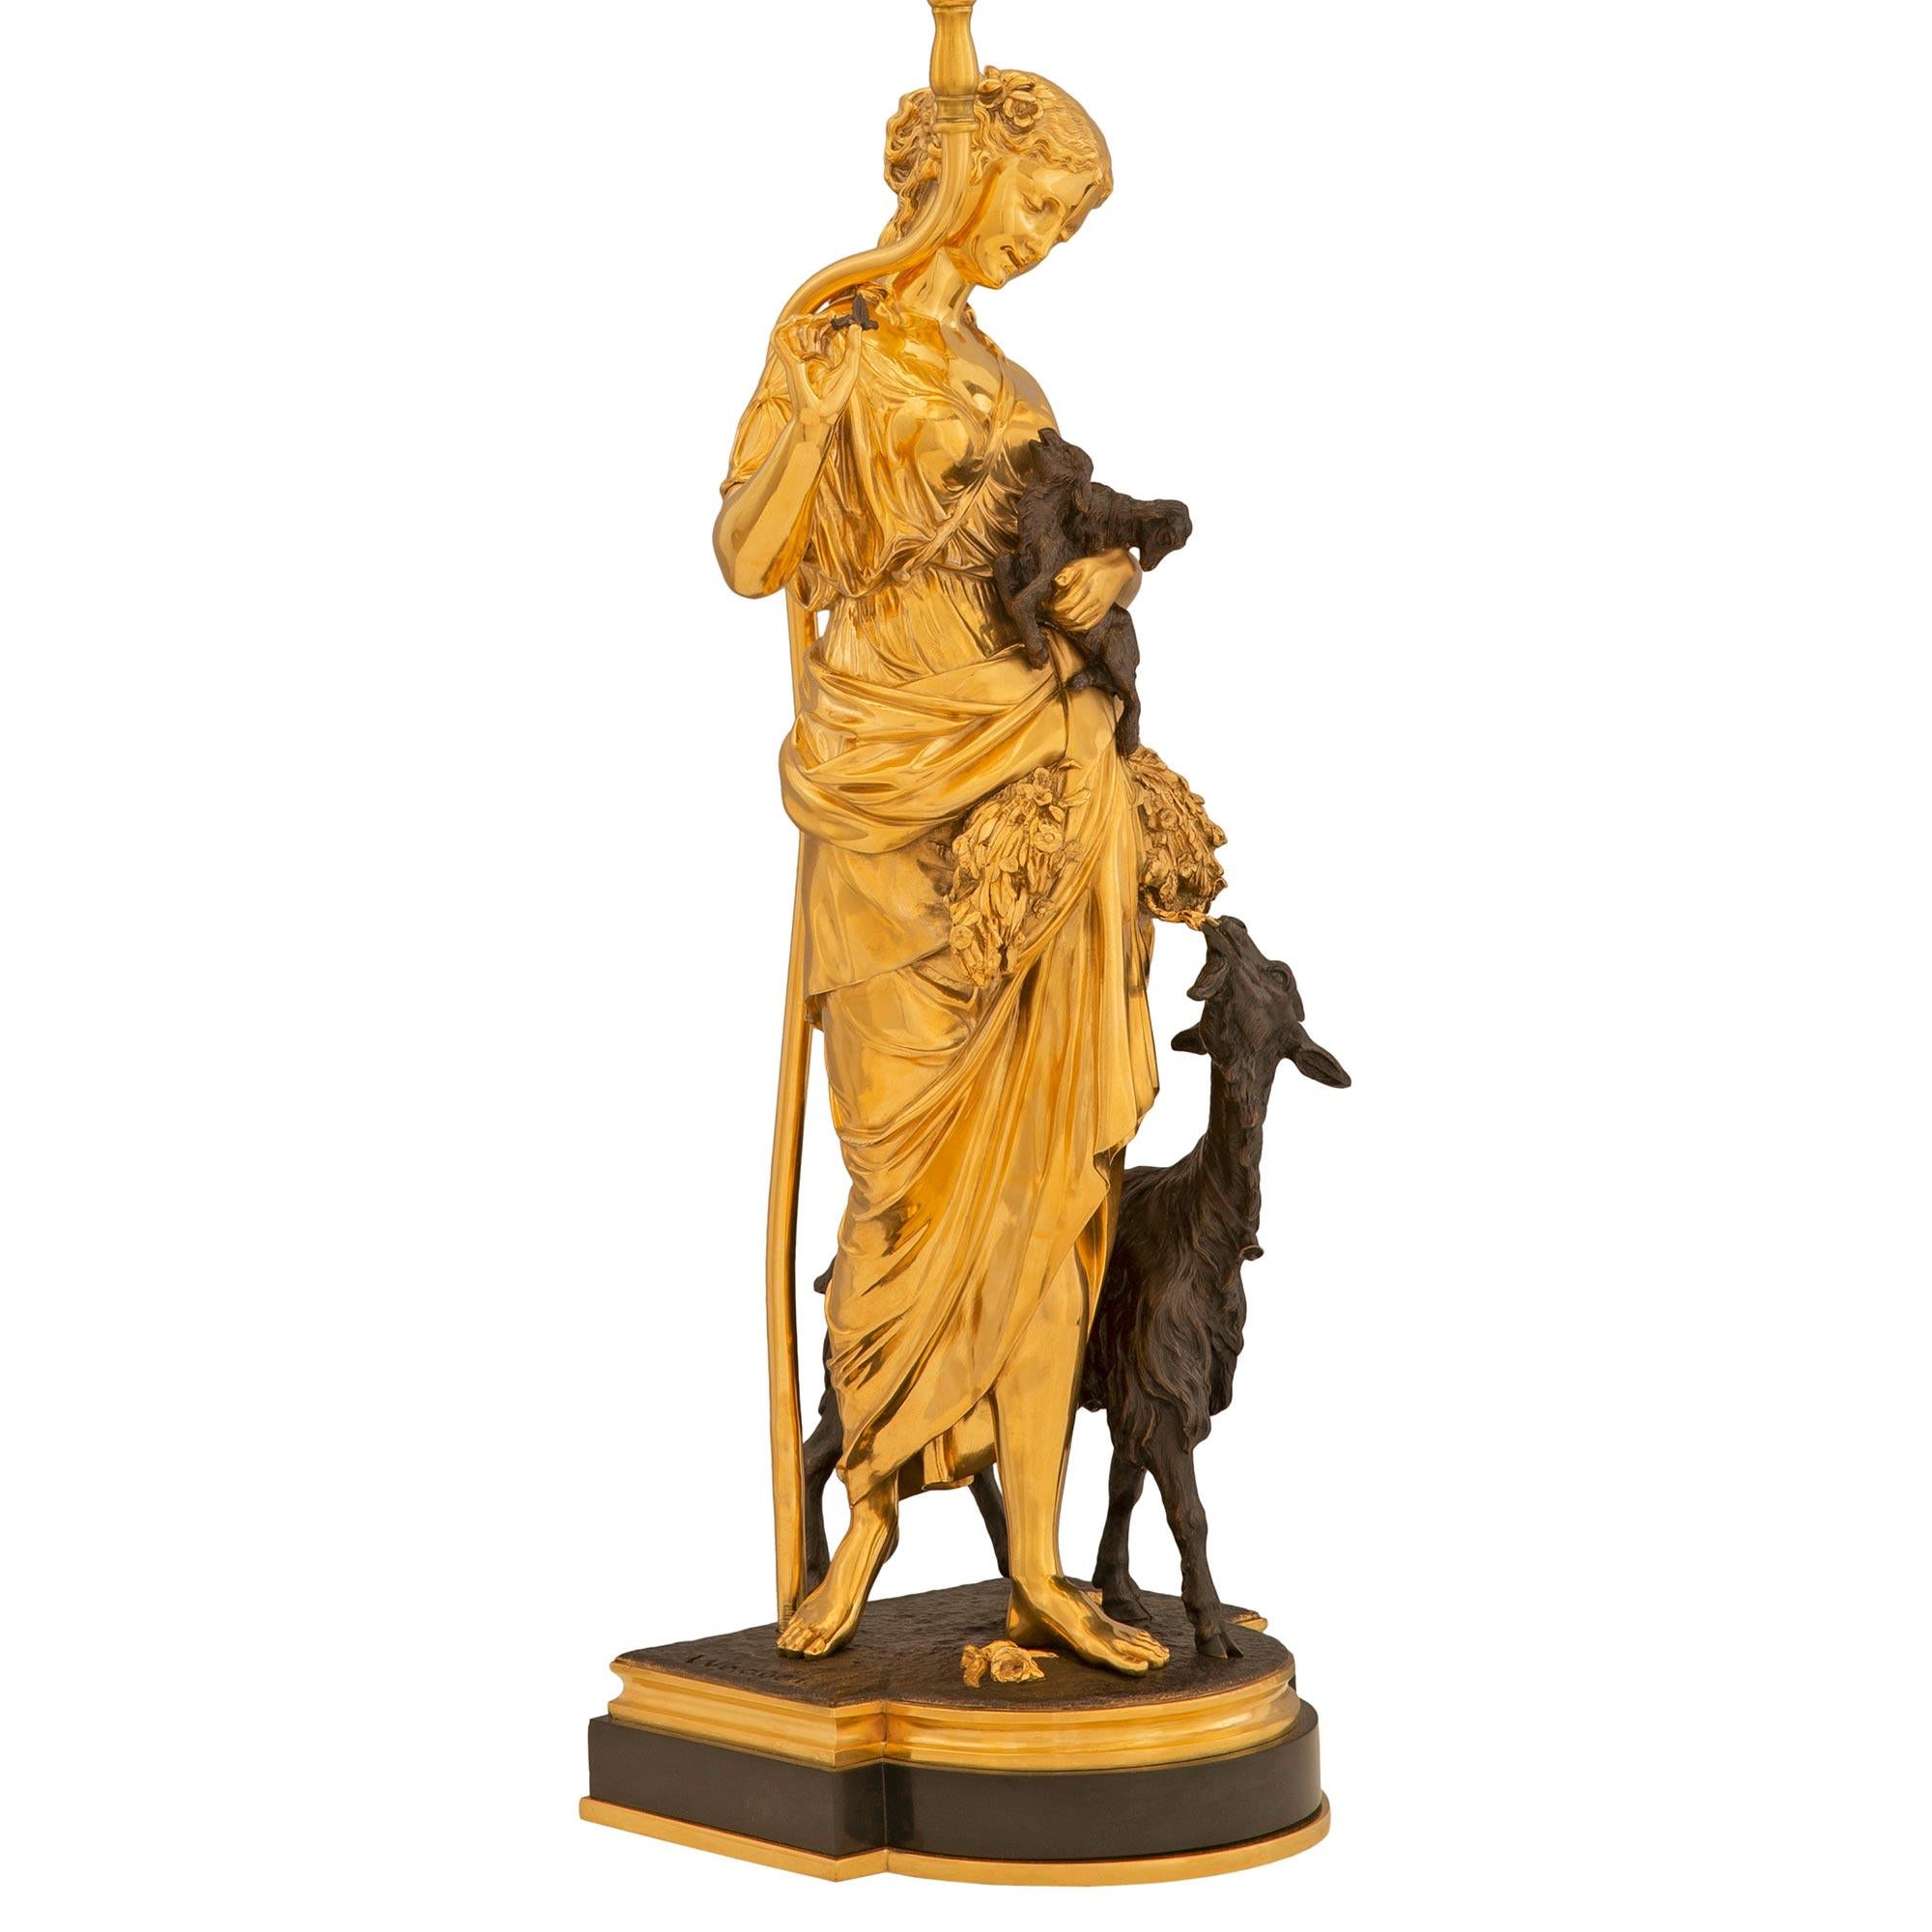 Paire de lampes en bronze doré et patiné de style Louis XVI du 19ème siècle, de très haute qualité. Chaque lampe est surélevée par une élégante base en bronze patiné avec de fins filets en bronze doré moucheté et une façade arrondie. La lampe de